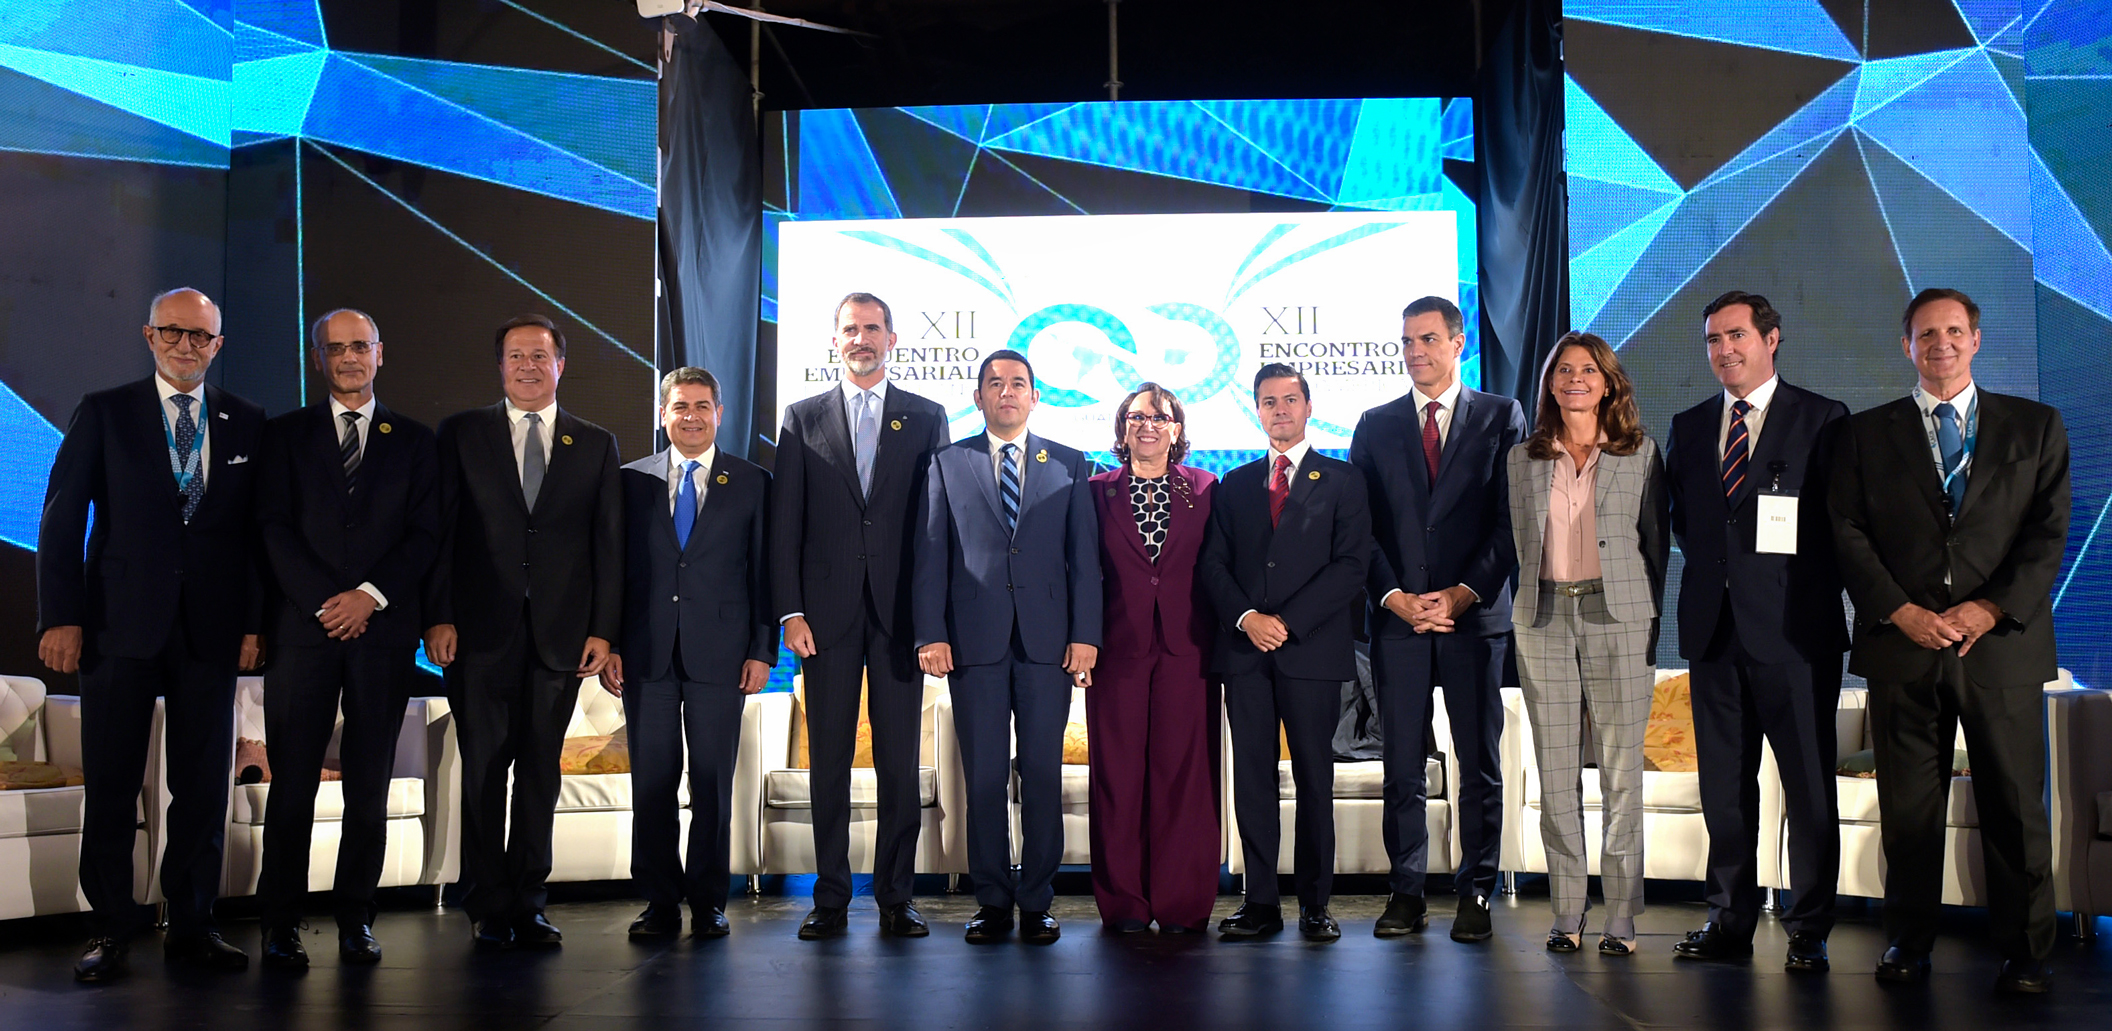 El Presidente de México, Enrique Peña Nieto, participó en la fotografía oficial de los Jefes de Estado y de Gobierno participantes en la XXVI Cumbre Iberoamericana.